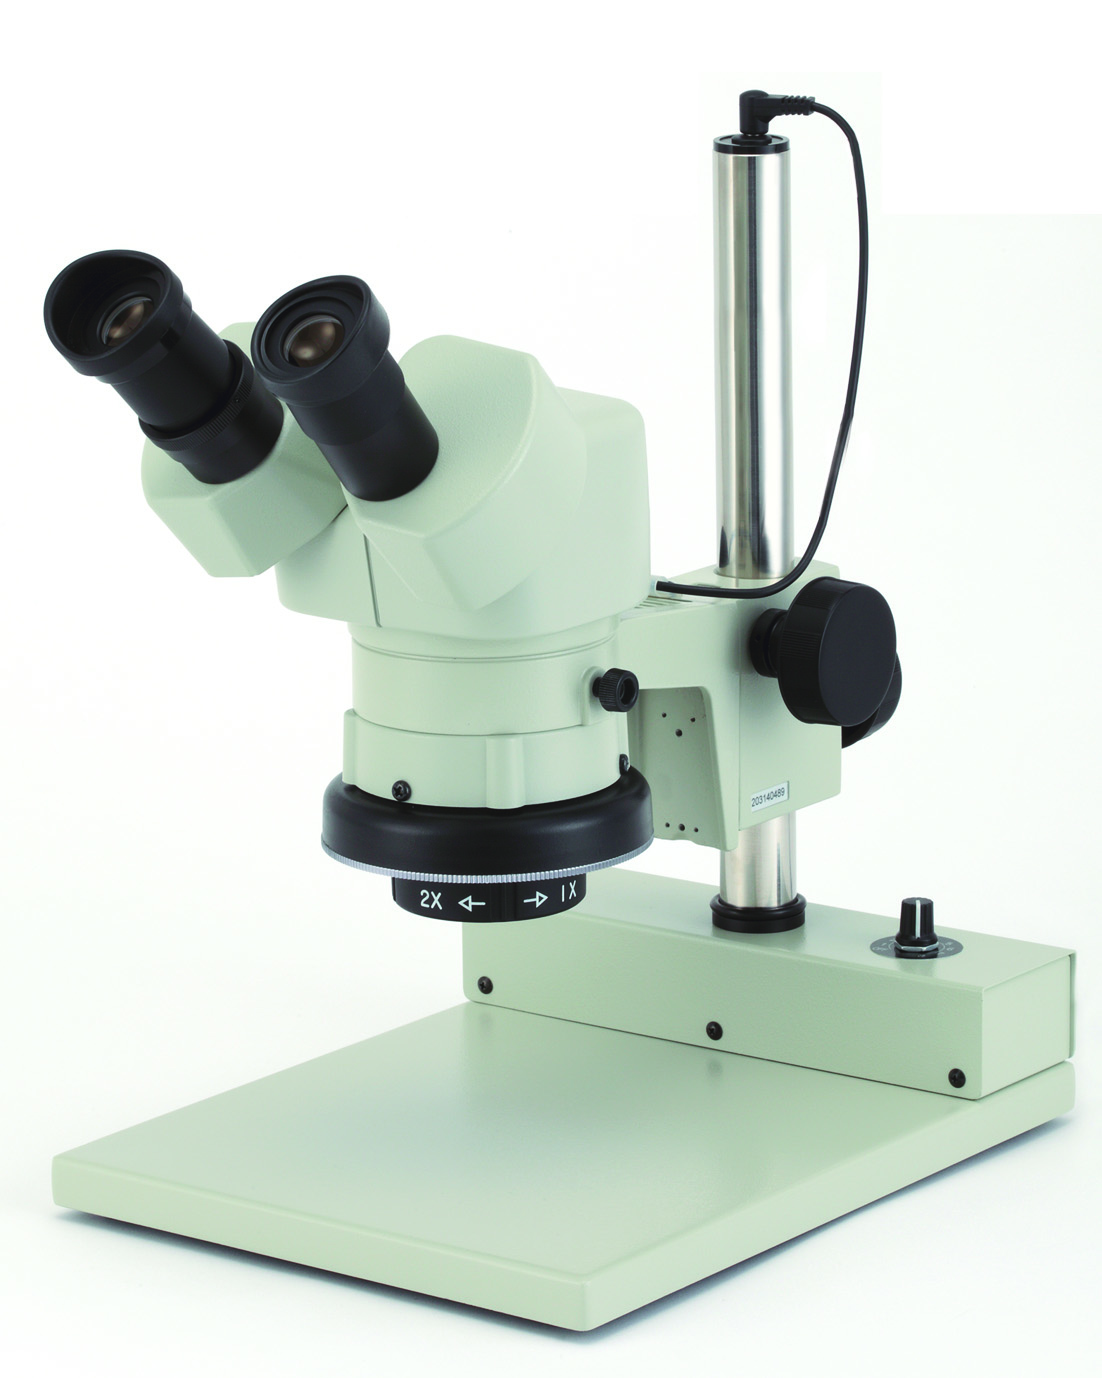 カートン光学 固定システム実体顕微鏡<双眼式>倍率10倍 LED落射調光照明